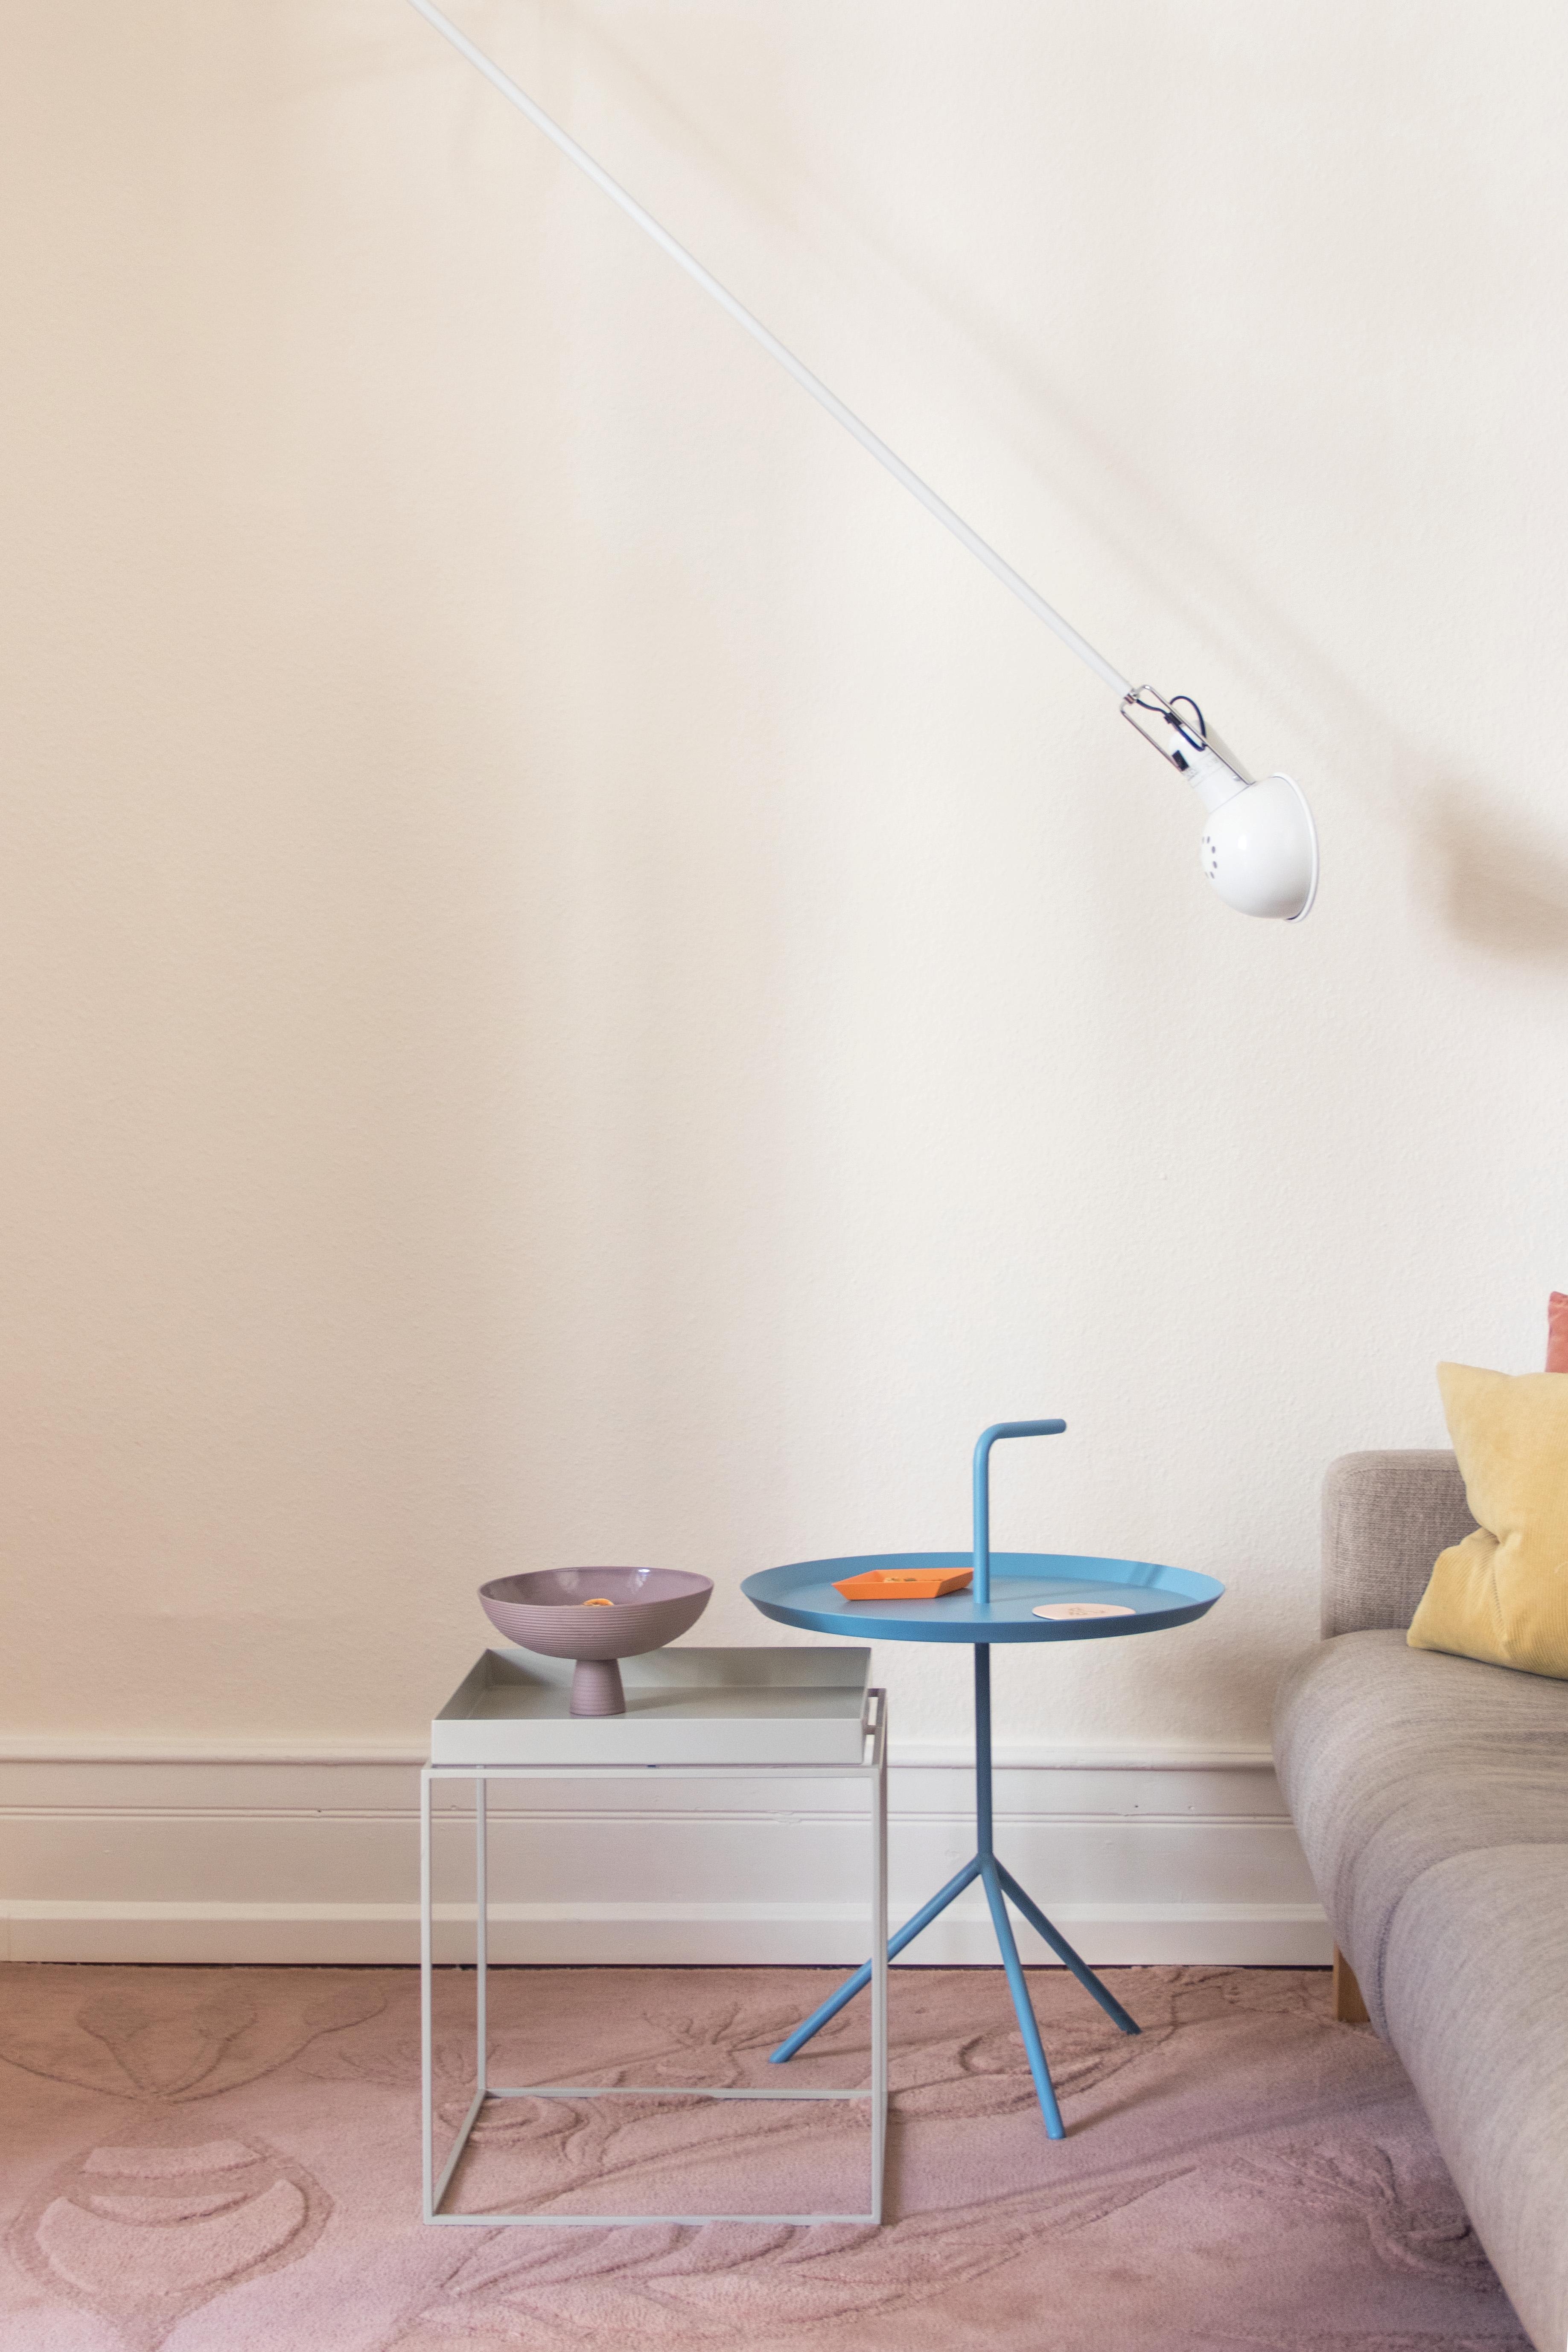 #sofa #wohnzimmer #rosa #farbenfroh #pastell #coffeetable #tisch #teppich #wandleuchte #altbau #wandfarbe